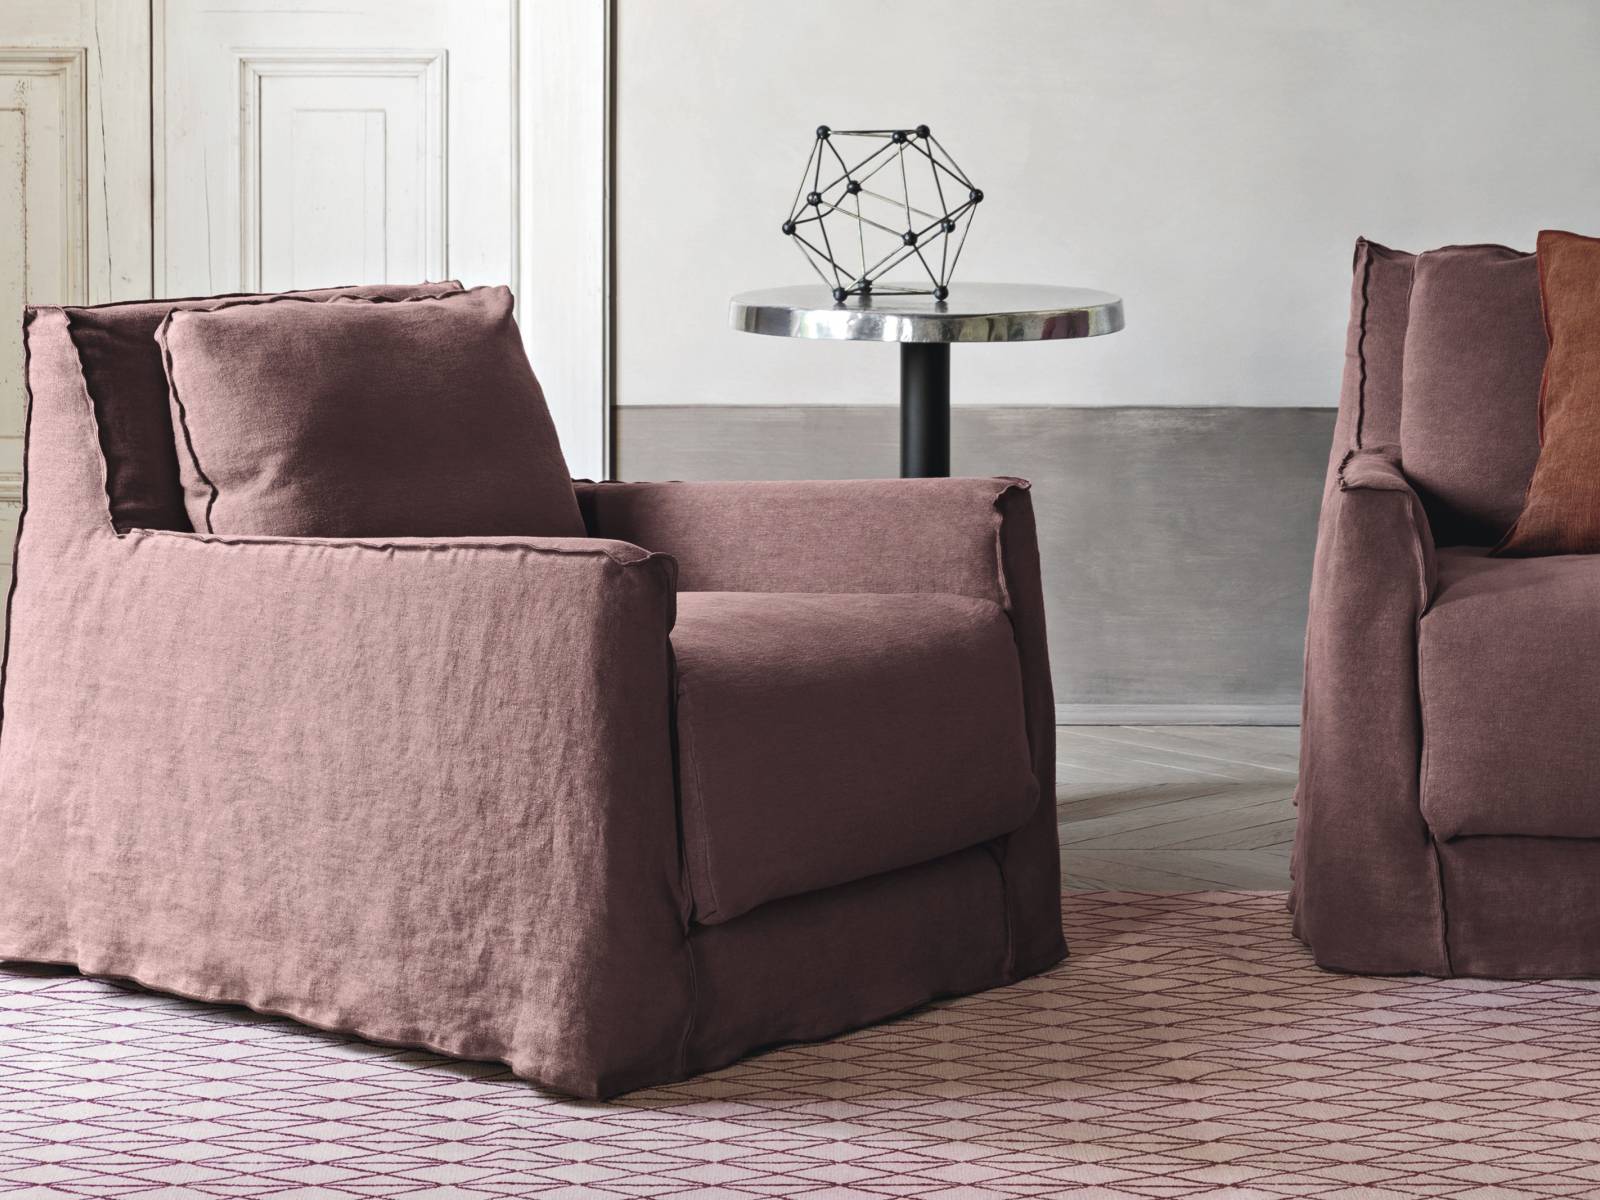 Das zentrale Thema der Indoor-Kollektion von Designerin Paola  Navone ist die Schönheit der Einfachheit und des Komforts. Zur Loll-Familie gehören einladende Sessel und Sofas, deren unverkennbare, kantige Form von den Konturen betont wird, die aufgrund der charakteristischen, aussenliegenden Nähte entstehen. Gervasoni.